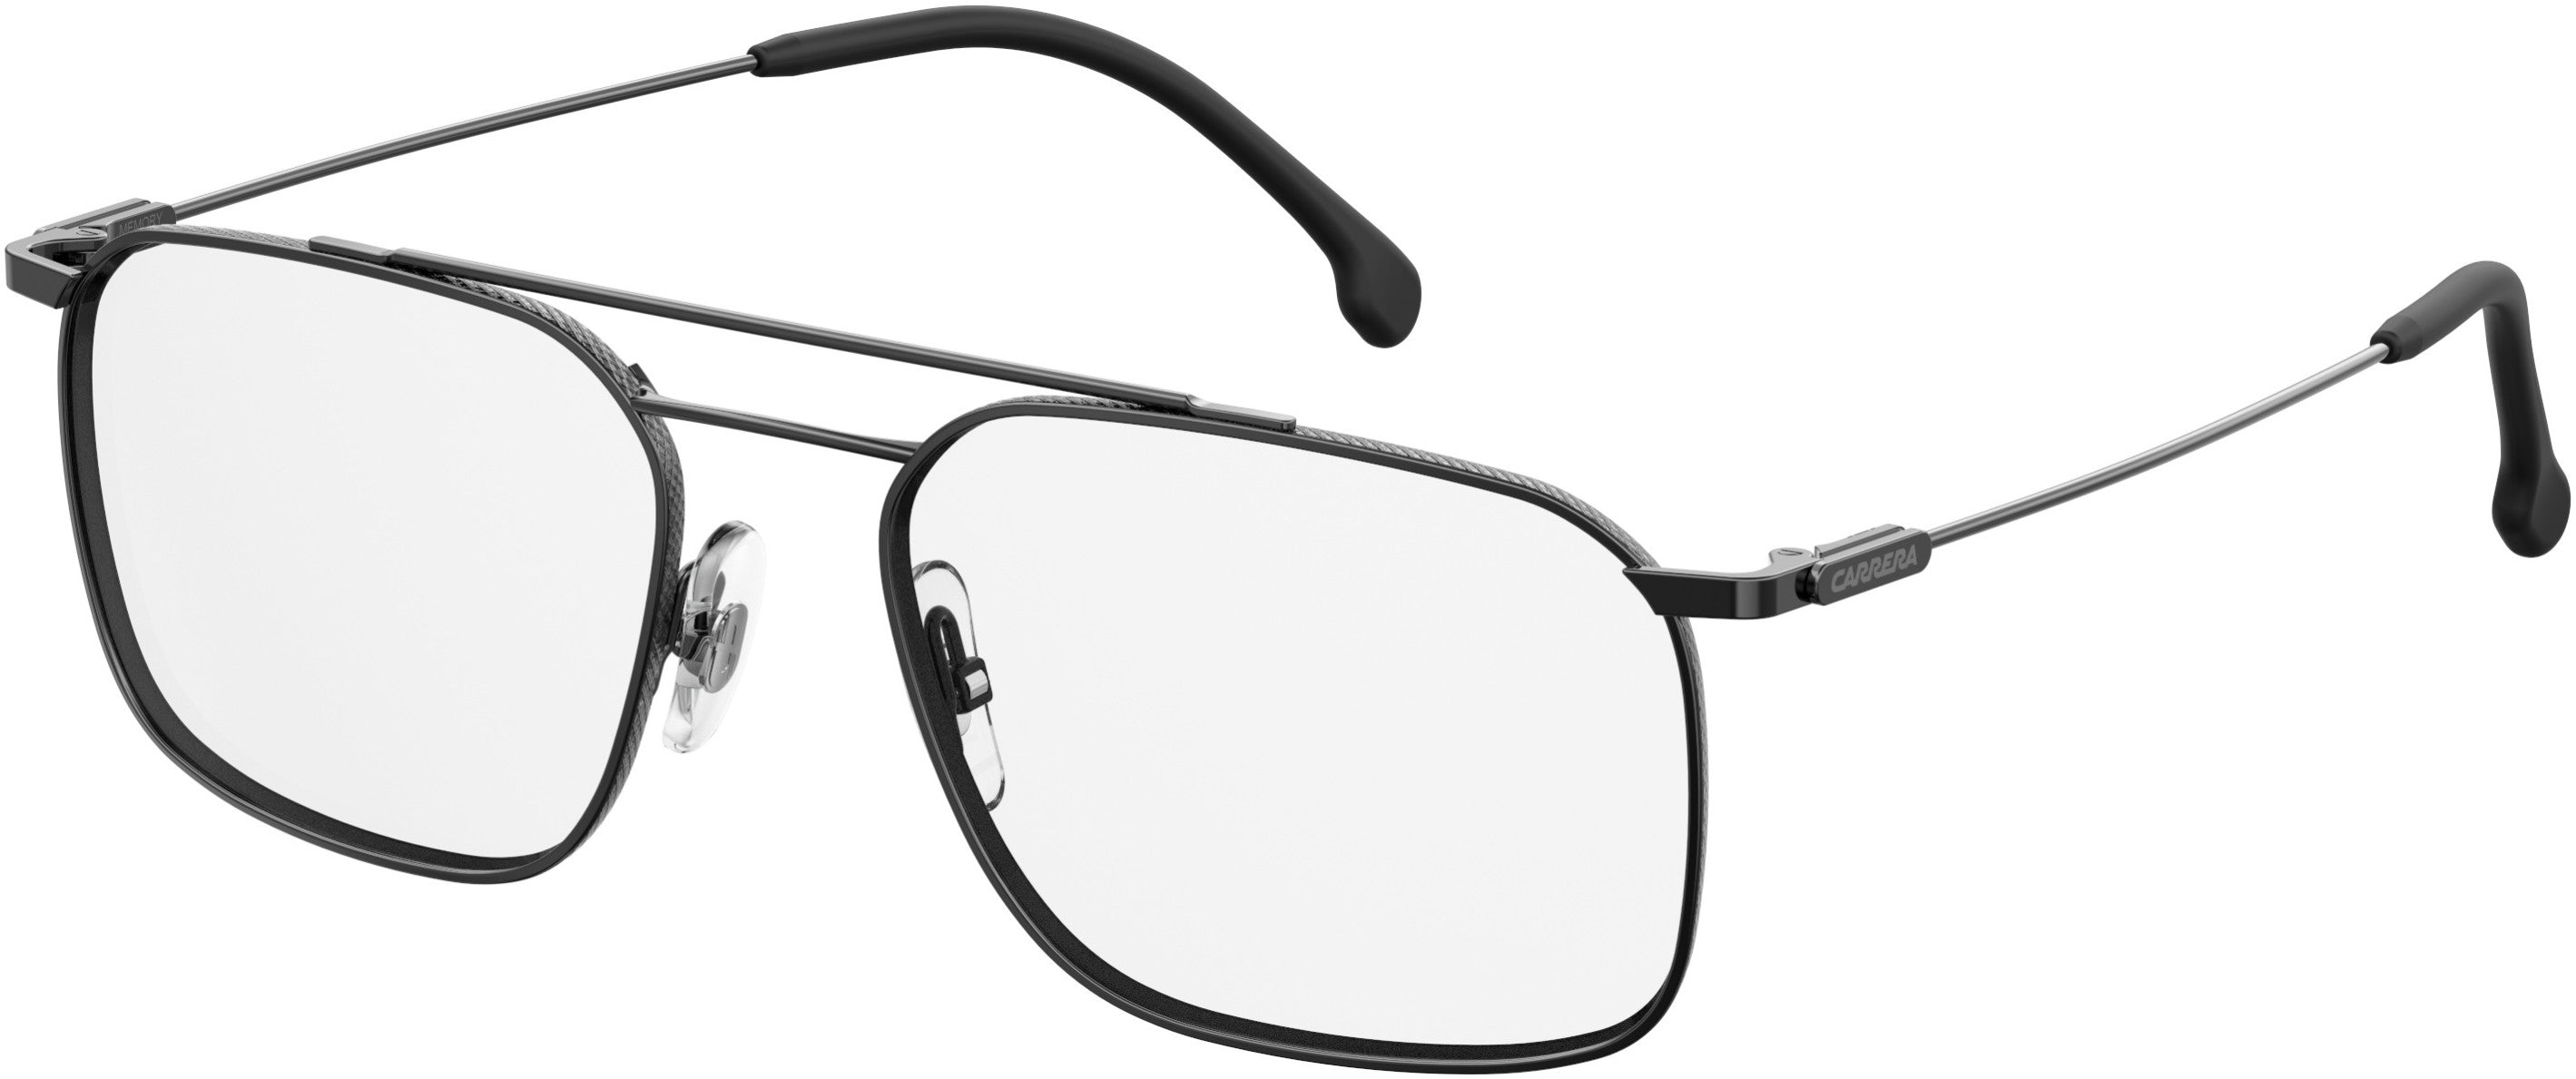  Carrera 189 Rectangular Eyeglasses 0V81-0V81  Dark Ruthenium Black (00 Demo Lens)